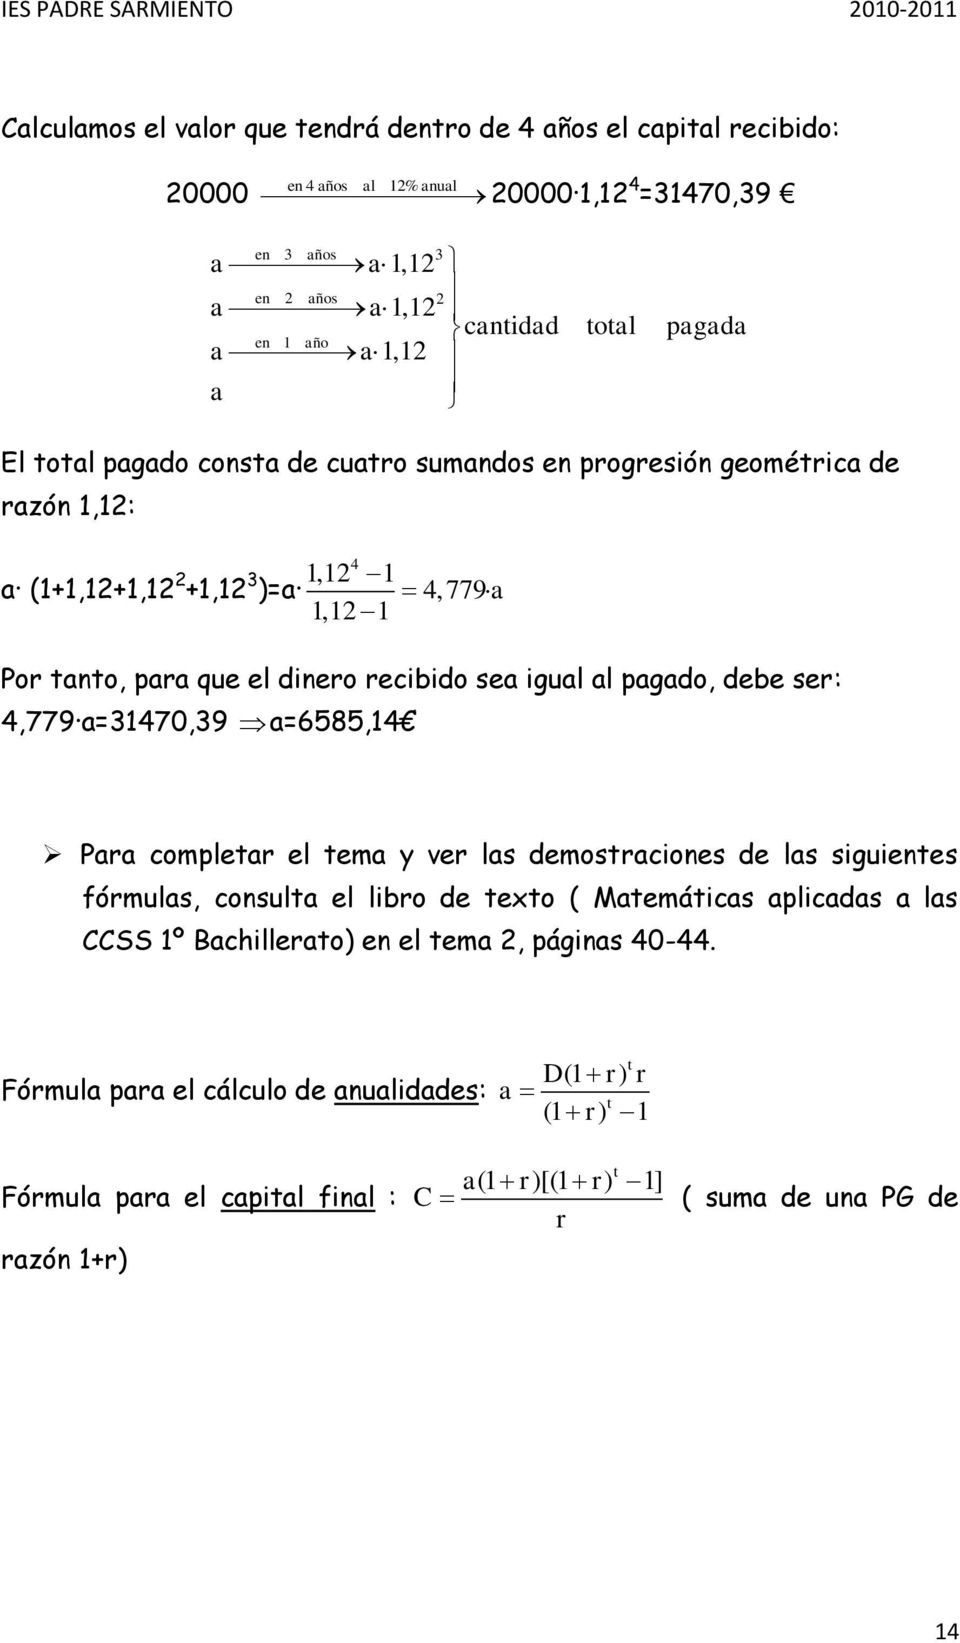 igual al pagado, debe ser: 4,779 a=31470,39 a=6585,14 Para completar el tema y ver las demostraciones de las siguientes fórmulas, consulta el libro de texto ( Matemáticas aplicadas a las CCSS